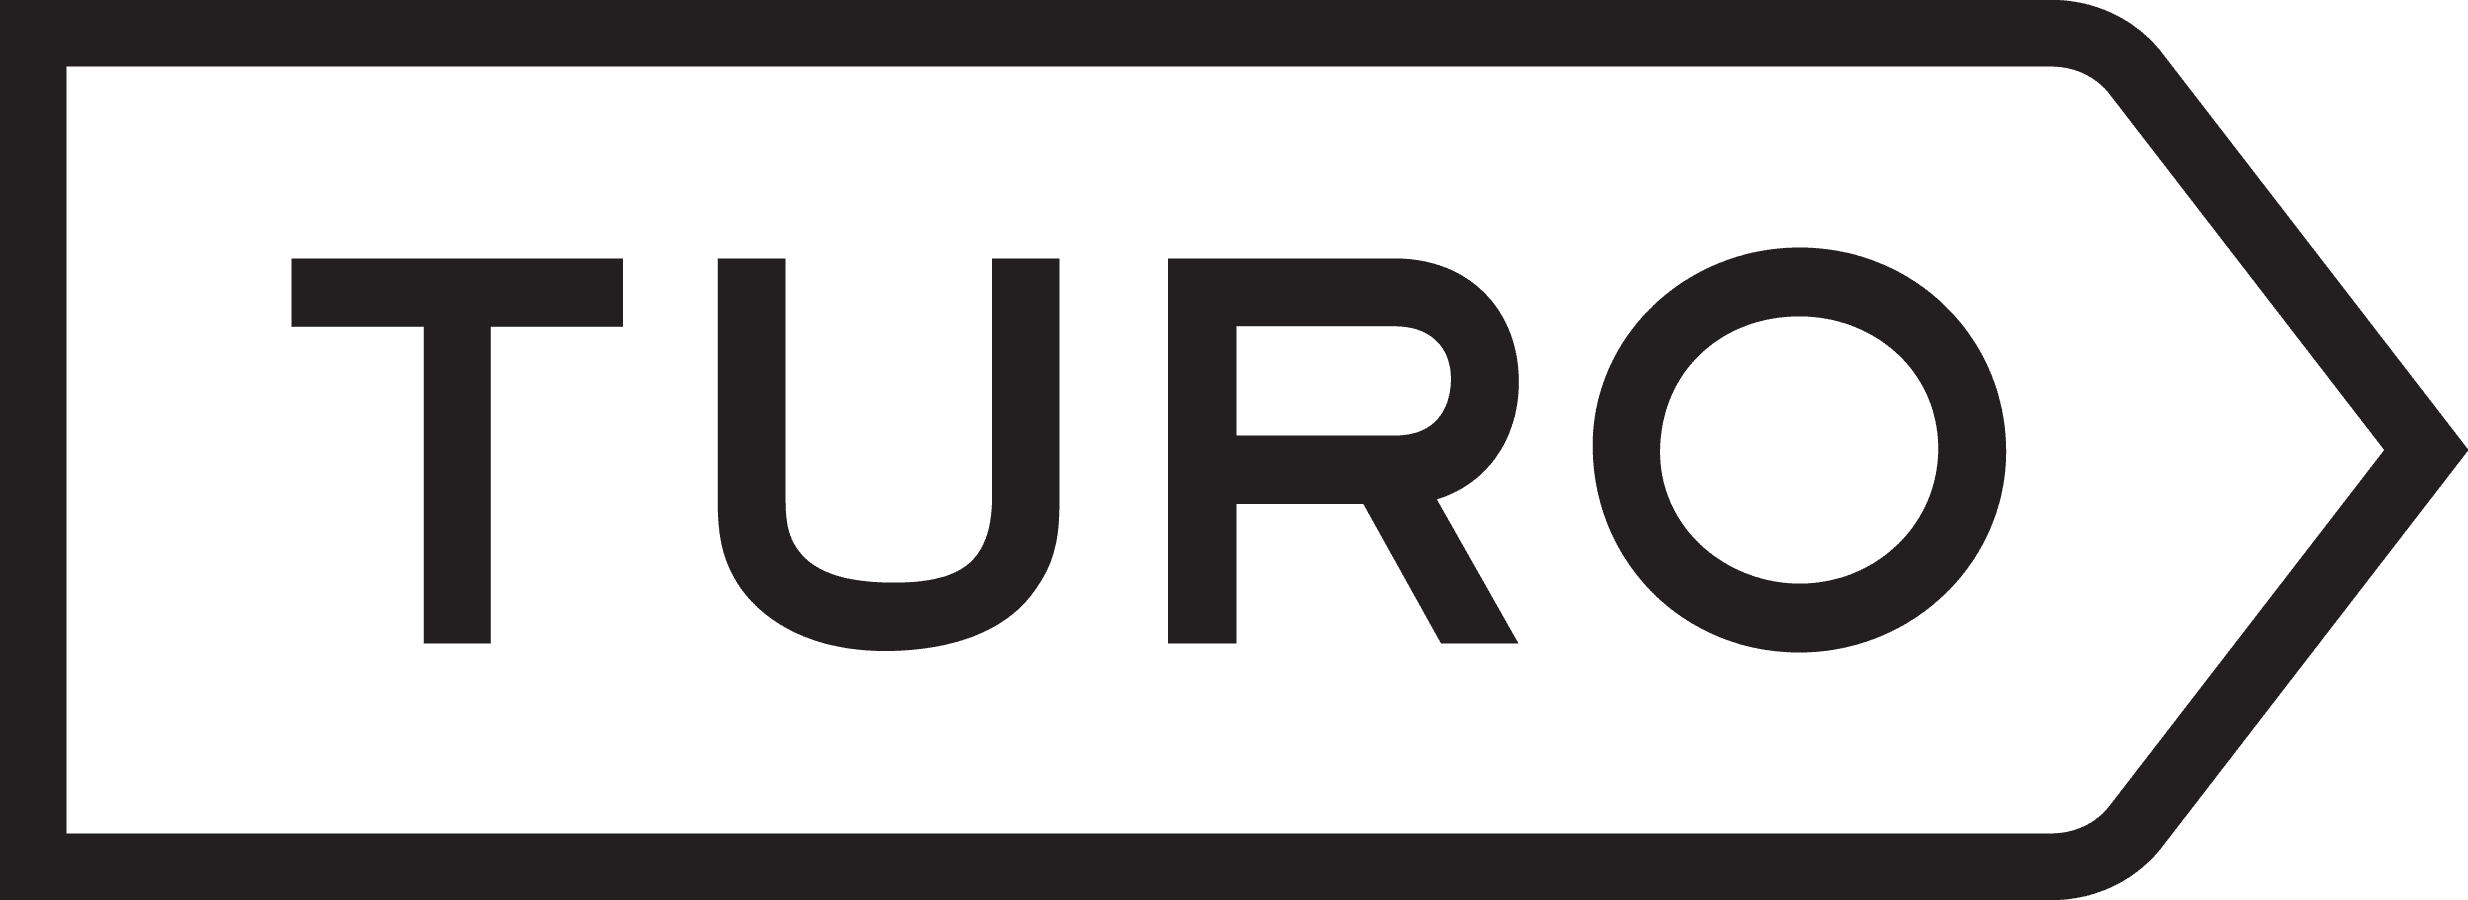 Turo logo | significado del logotipo, png, vector